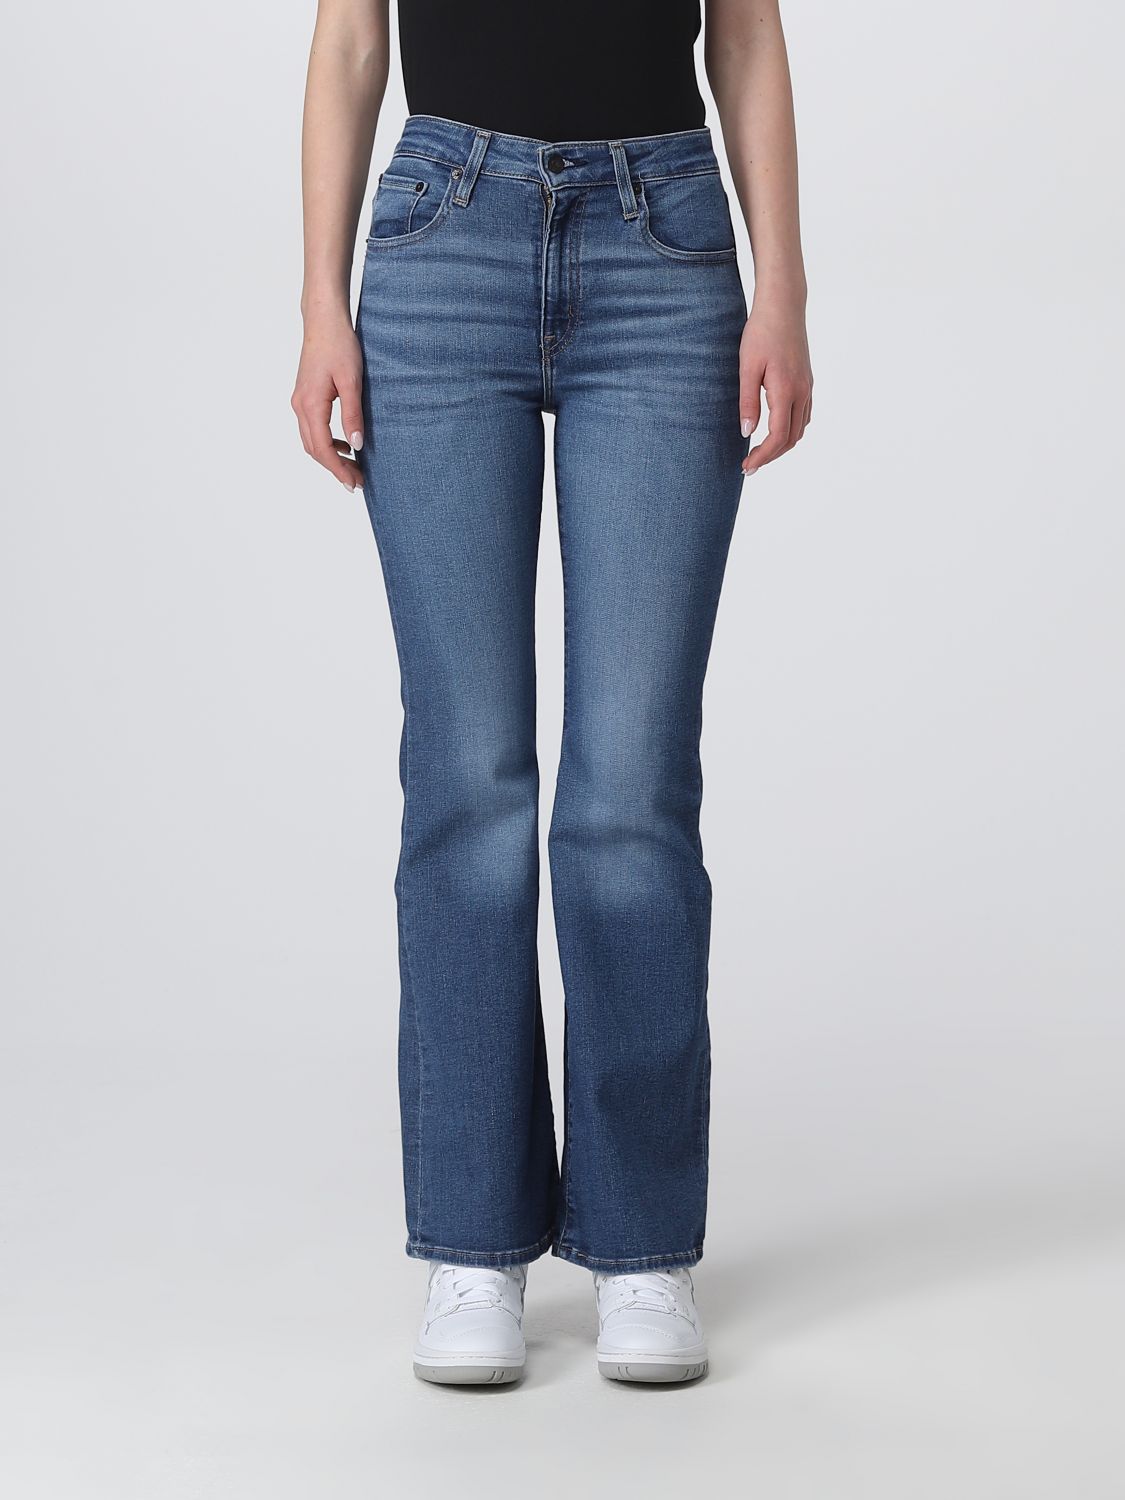 jeans levi's woman colour denim